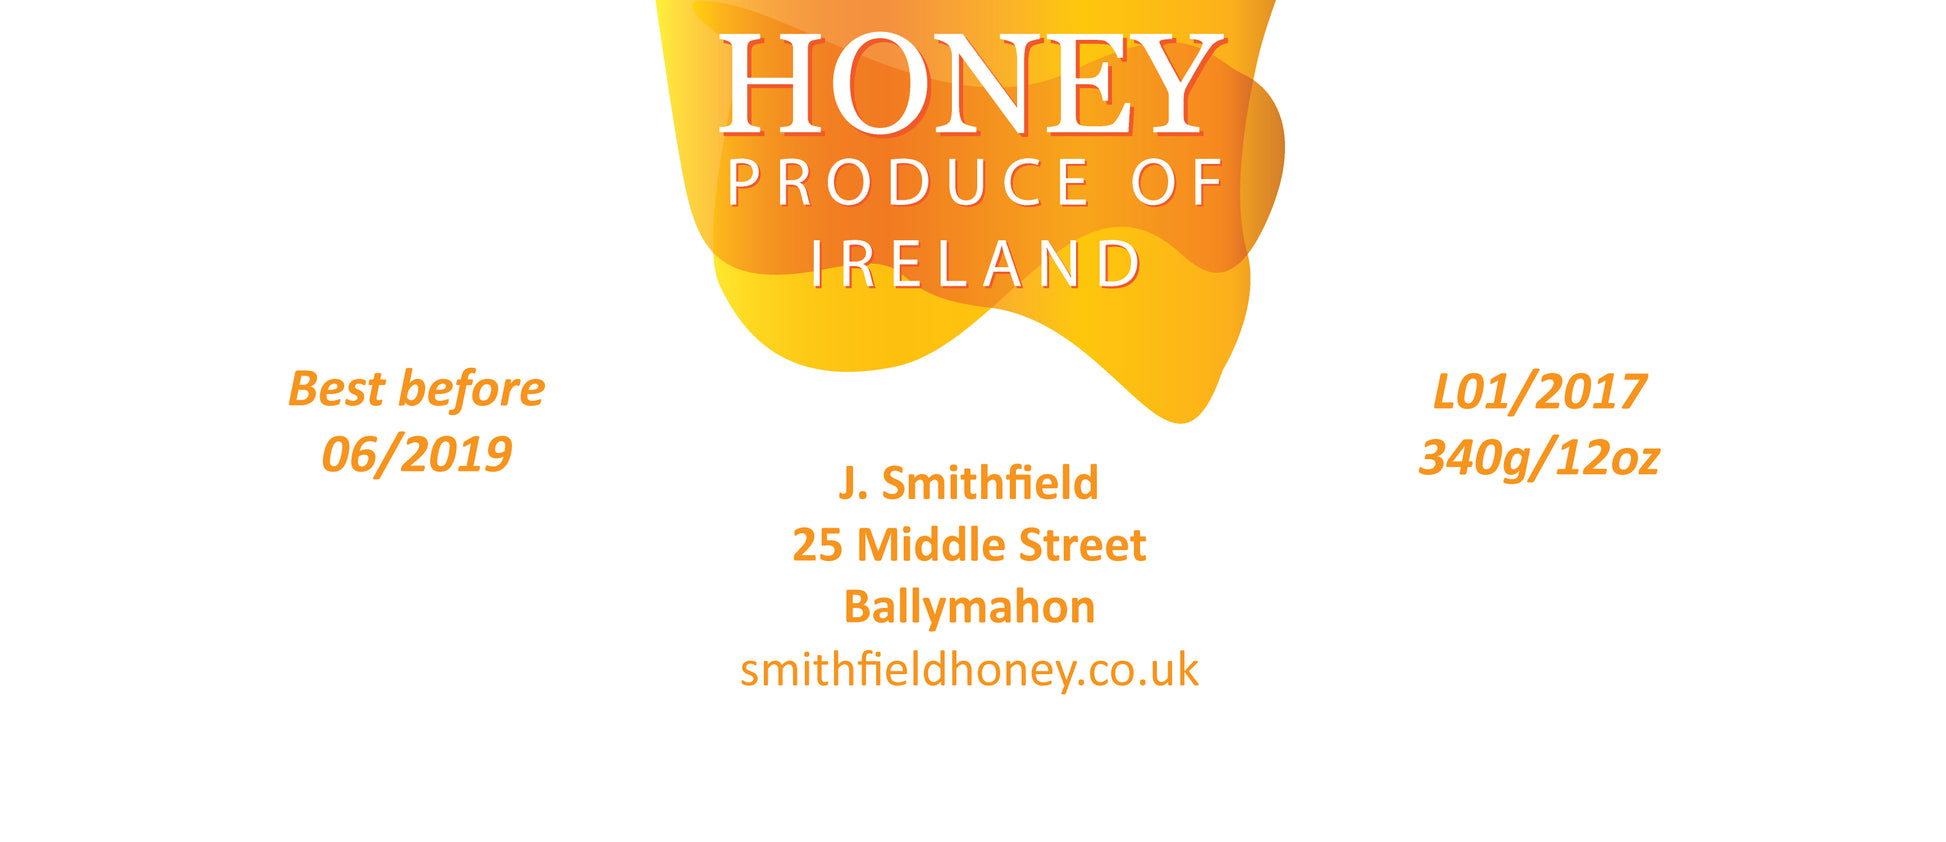 12oz Jar Label - Honey Flow (100 labels) - Bee Equipment